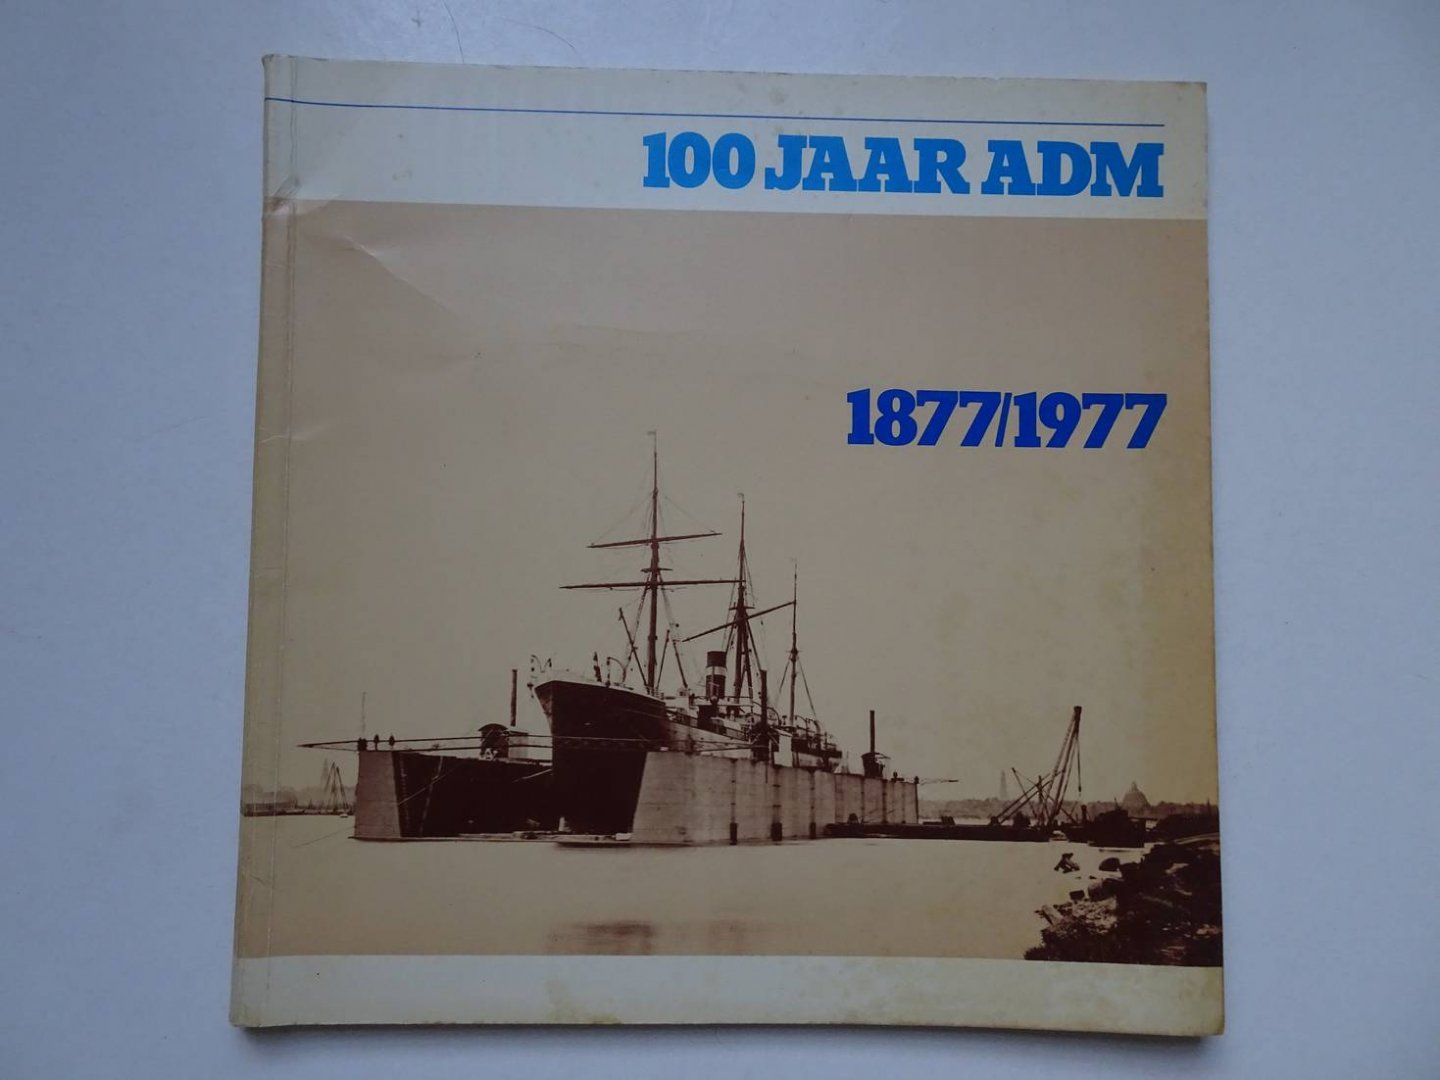 Groen jr., J.A., et al. - Op de golven van een eeuw. 100 jaar ADM (Amsterdamsche Droogdok-Maatschappij) 1877-1977.